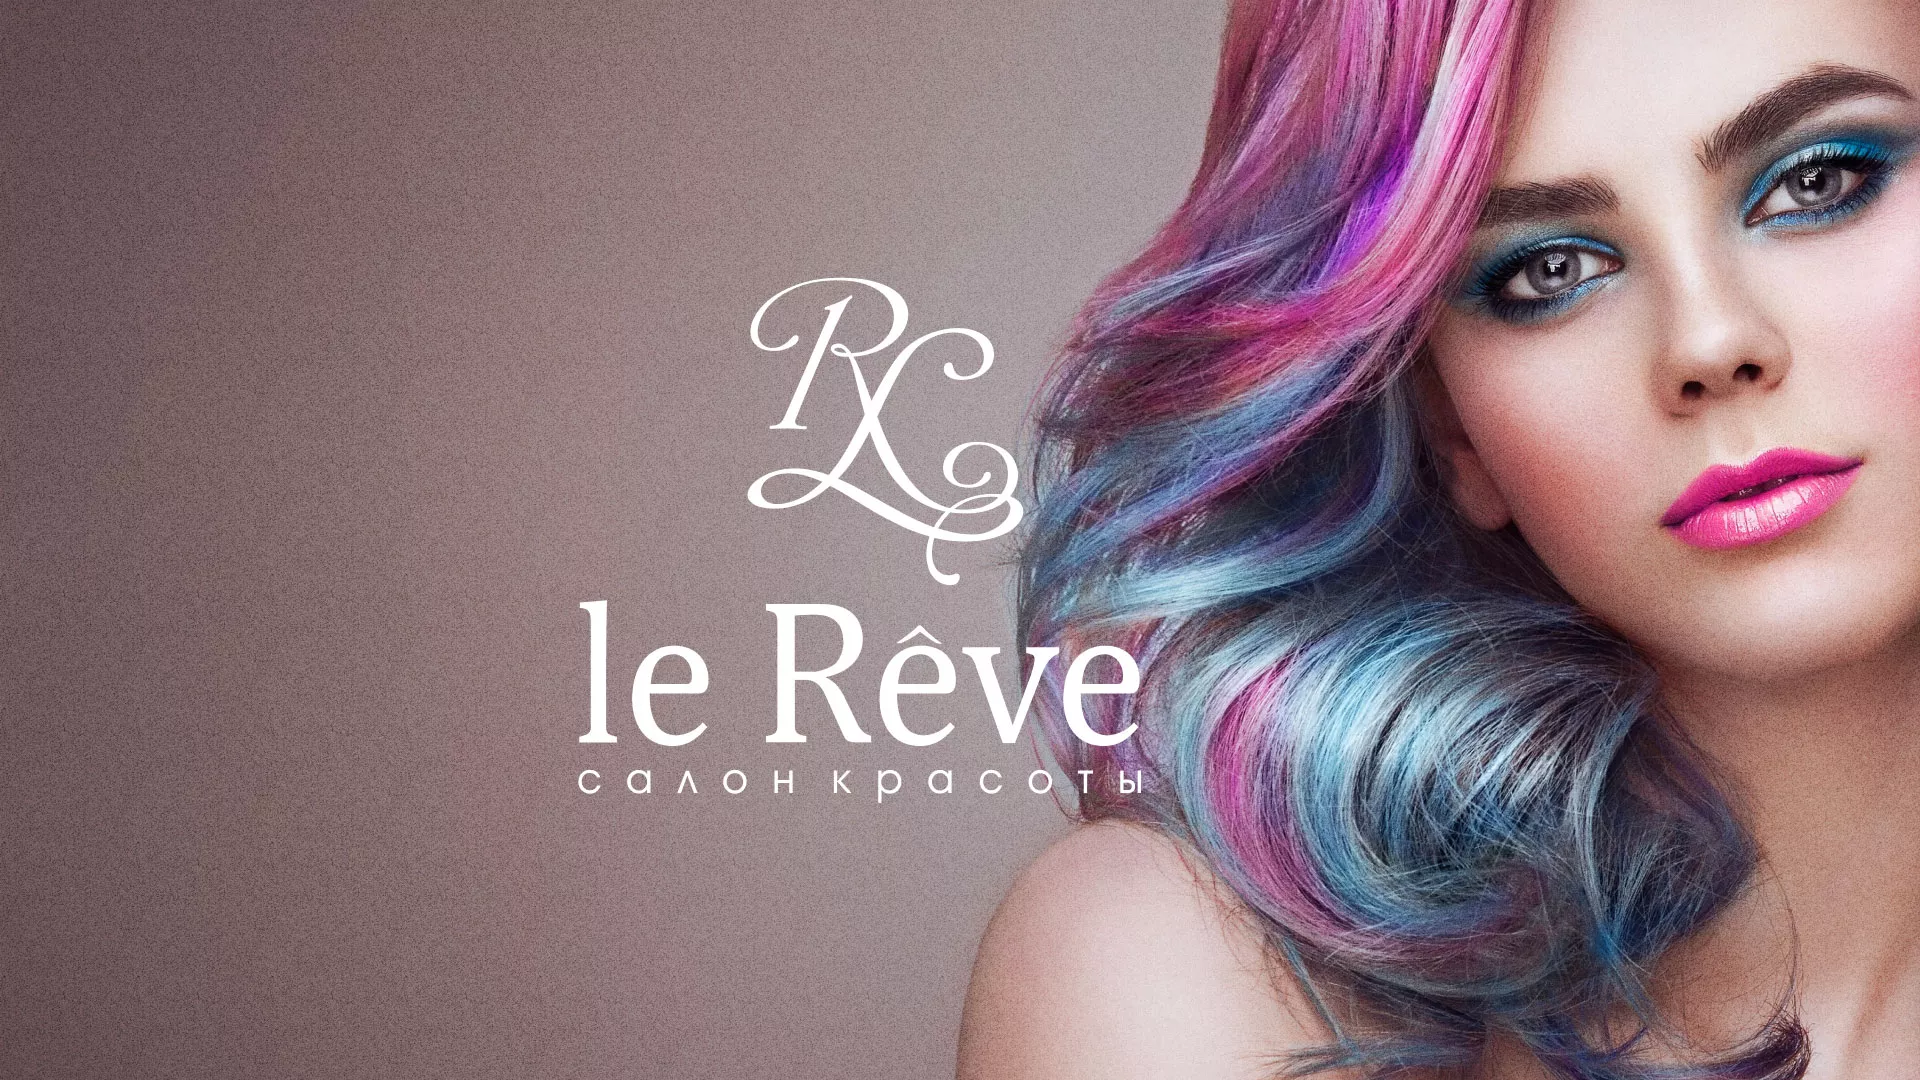 Создание сайта для салона красоты «Le Reve» в Рыльске